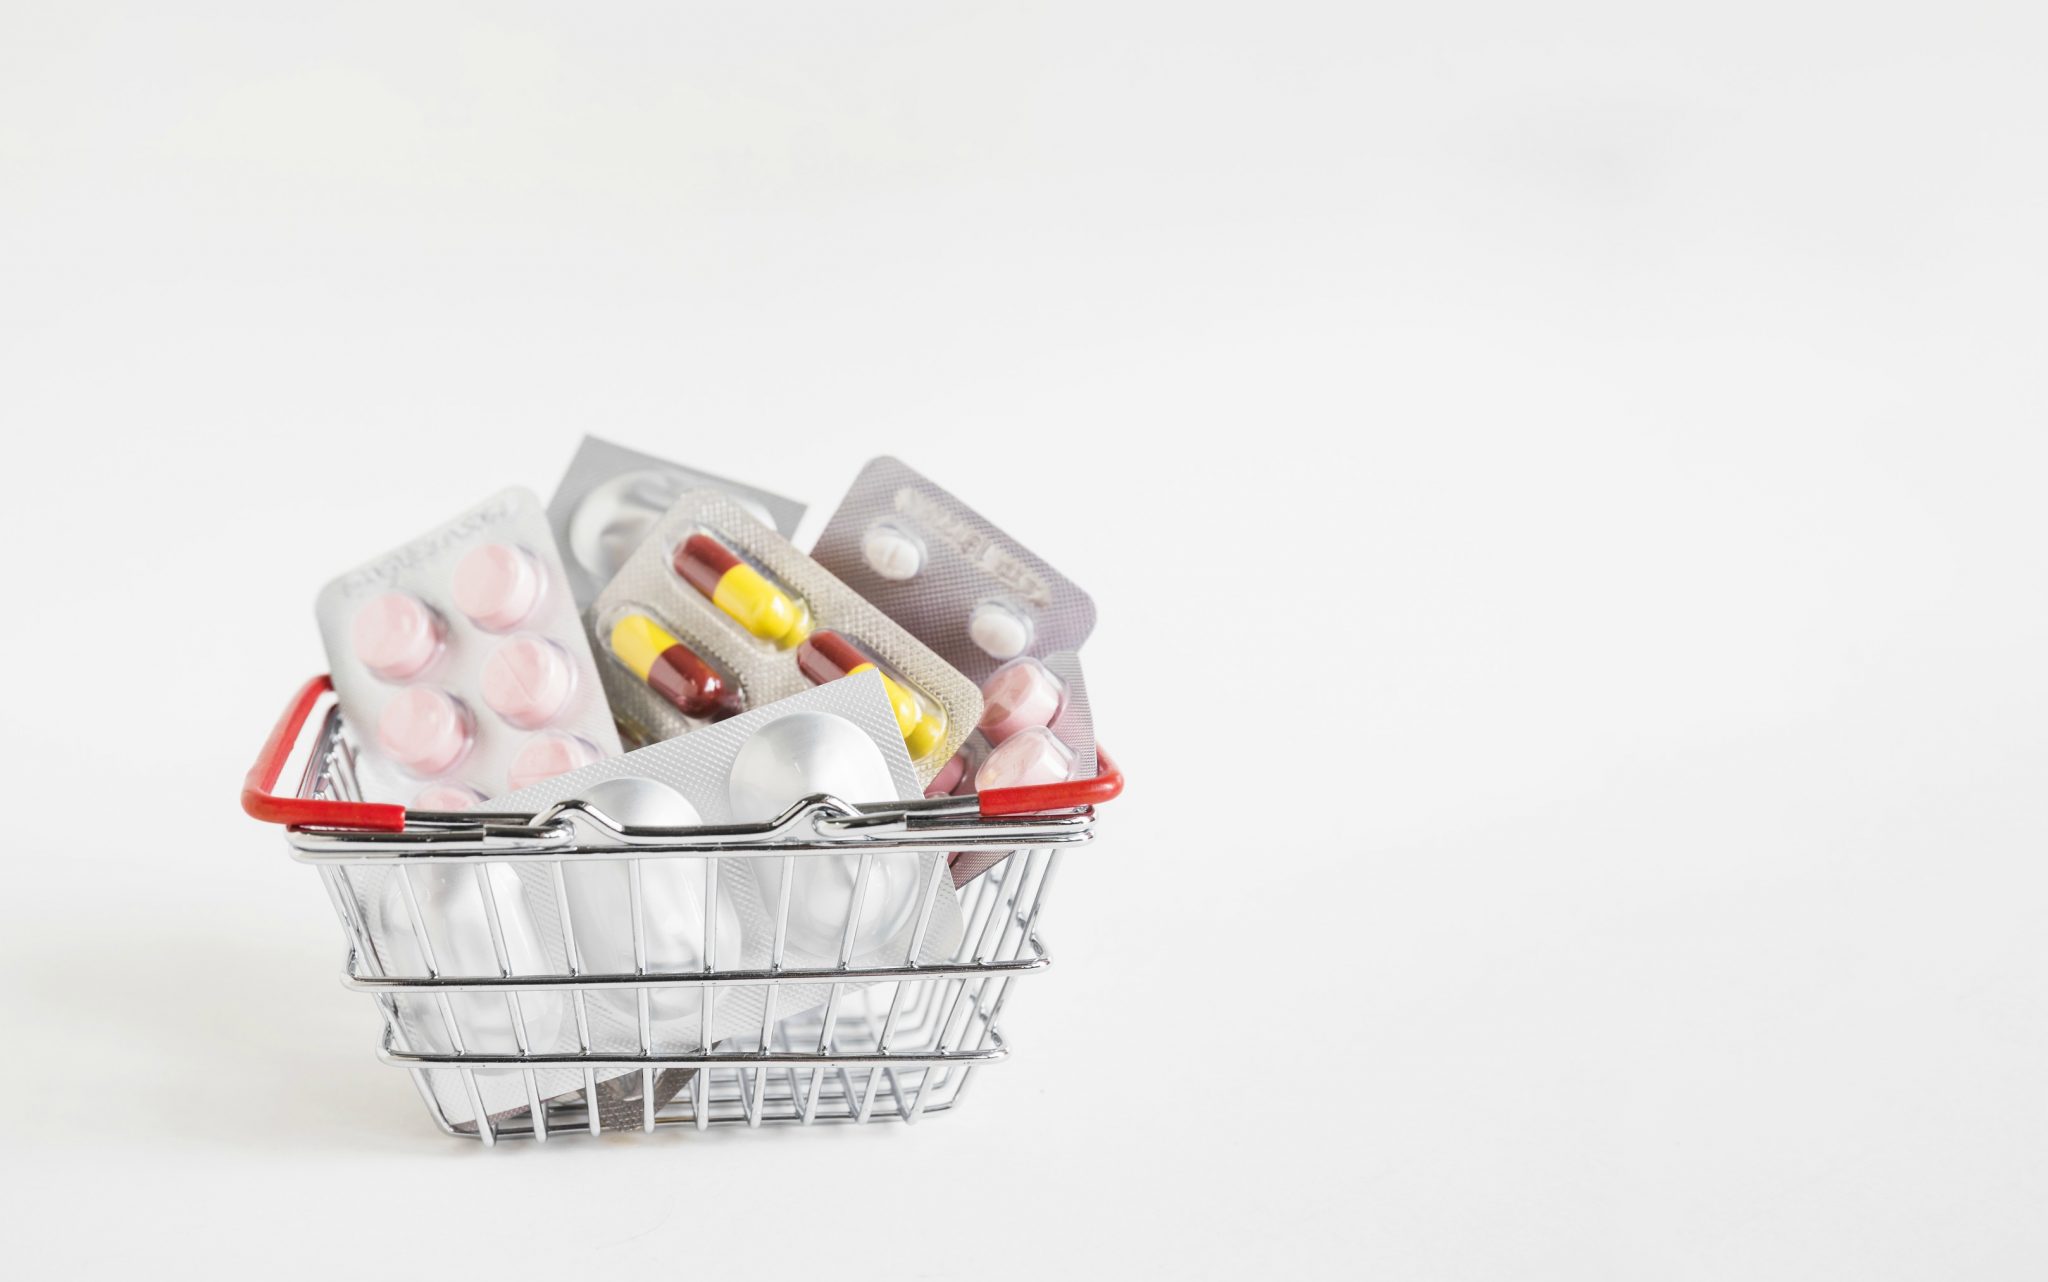 Quarentena alterou o comportamento de compra do consumidor do setor farmacêutico